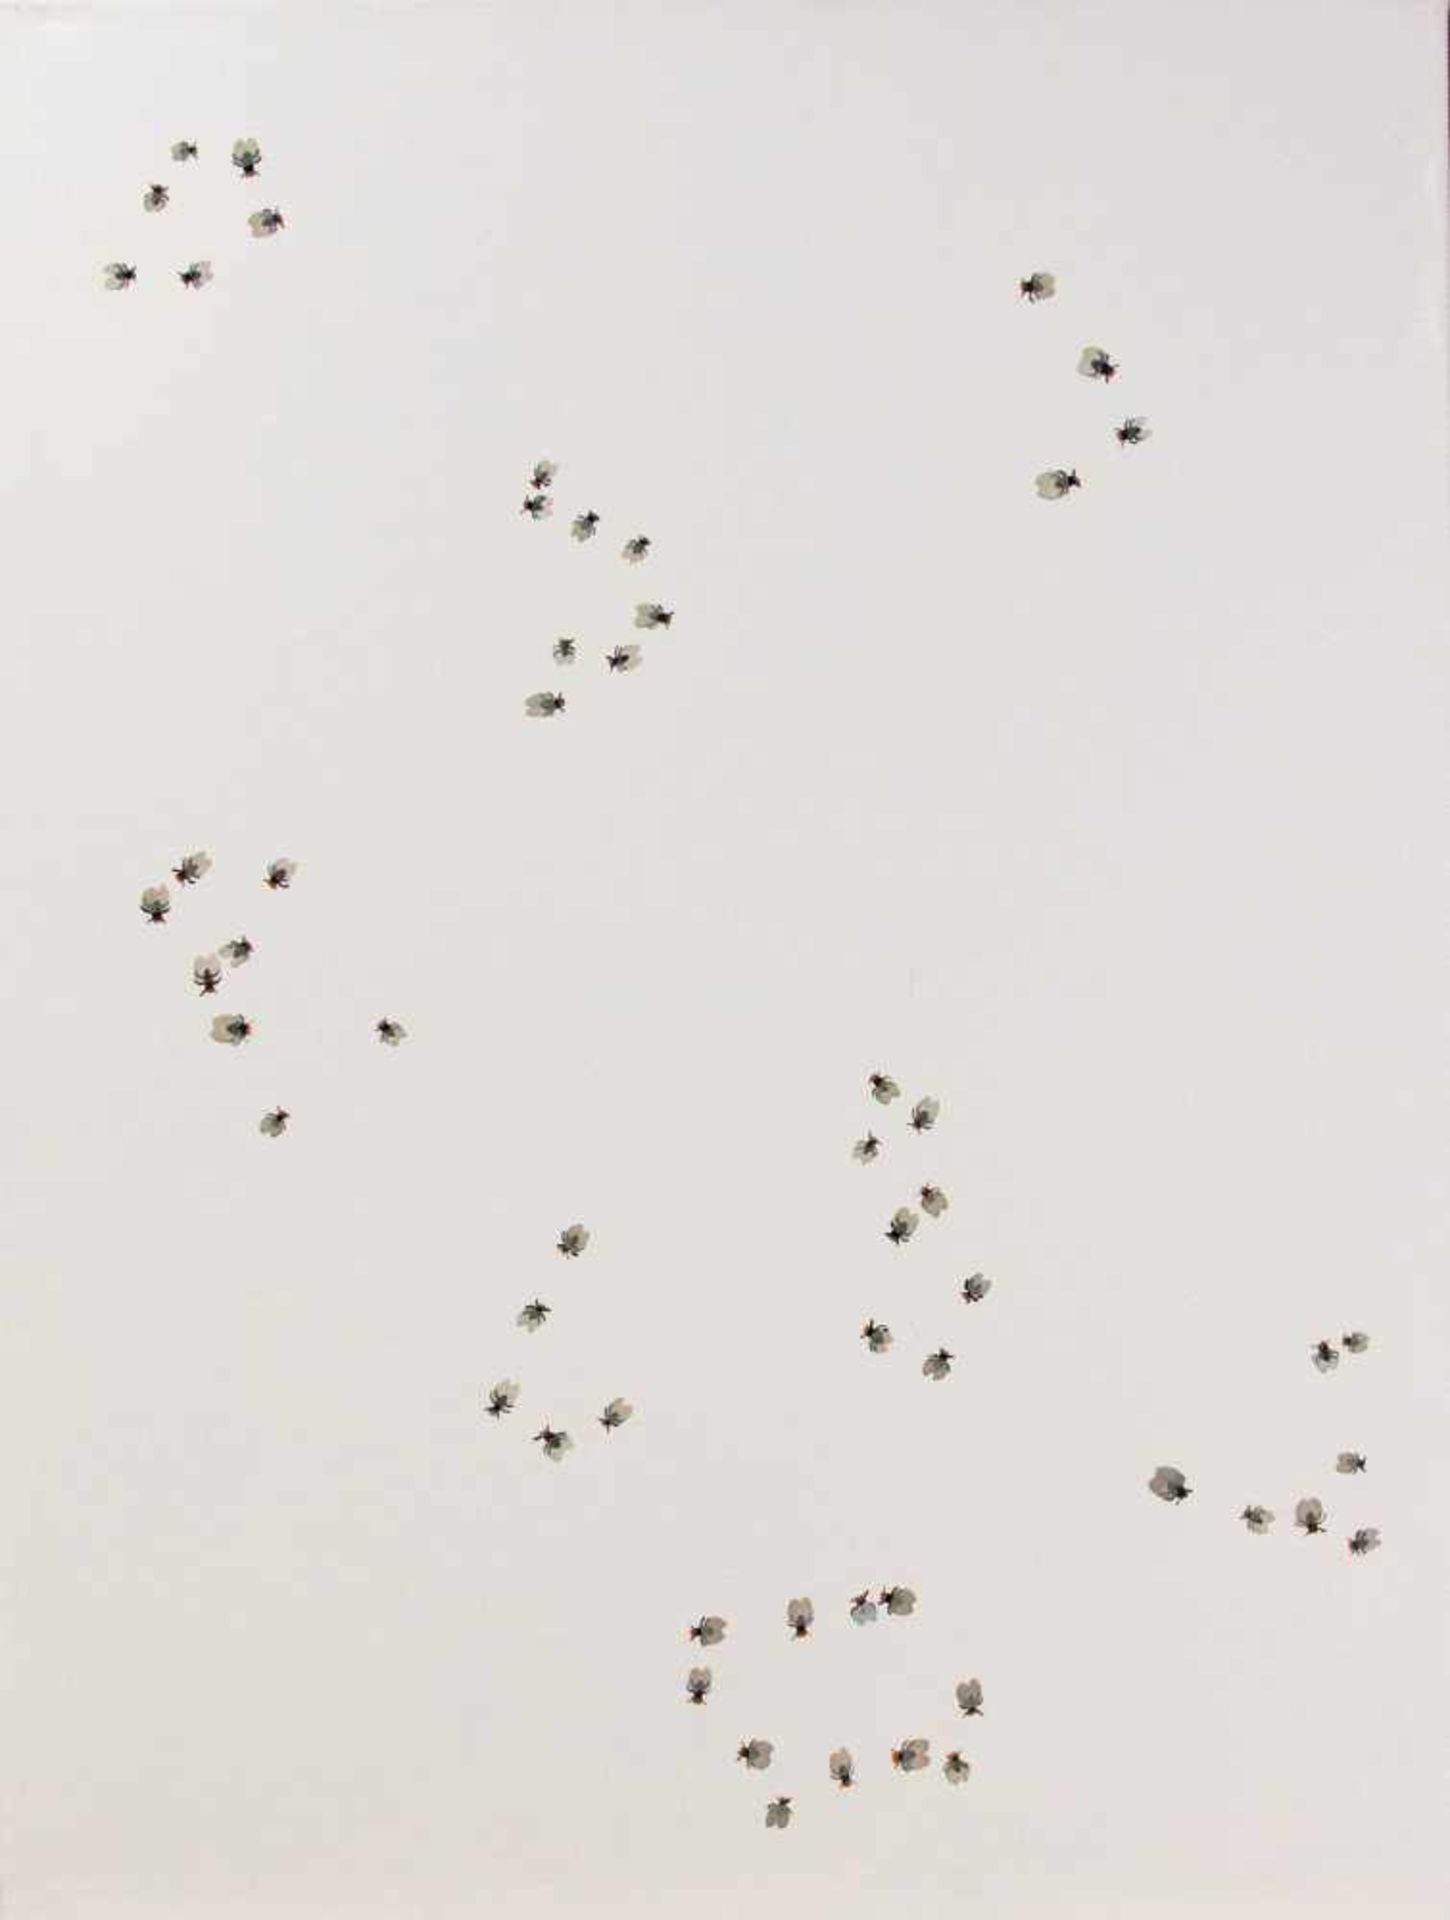 Jens Ulrich Petersen (*1947), zeitgenössischer, dänischer Künstler, Gruppen von Fliegenauf weißem